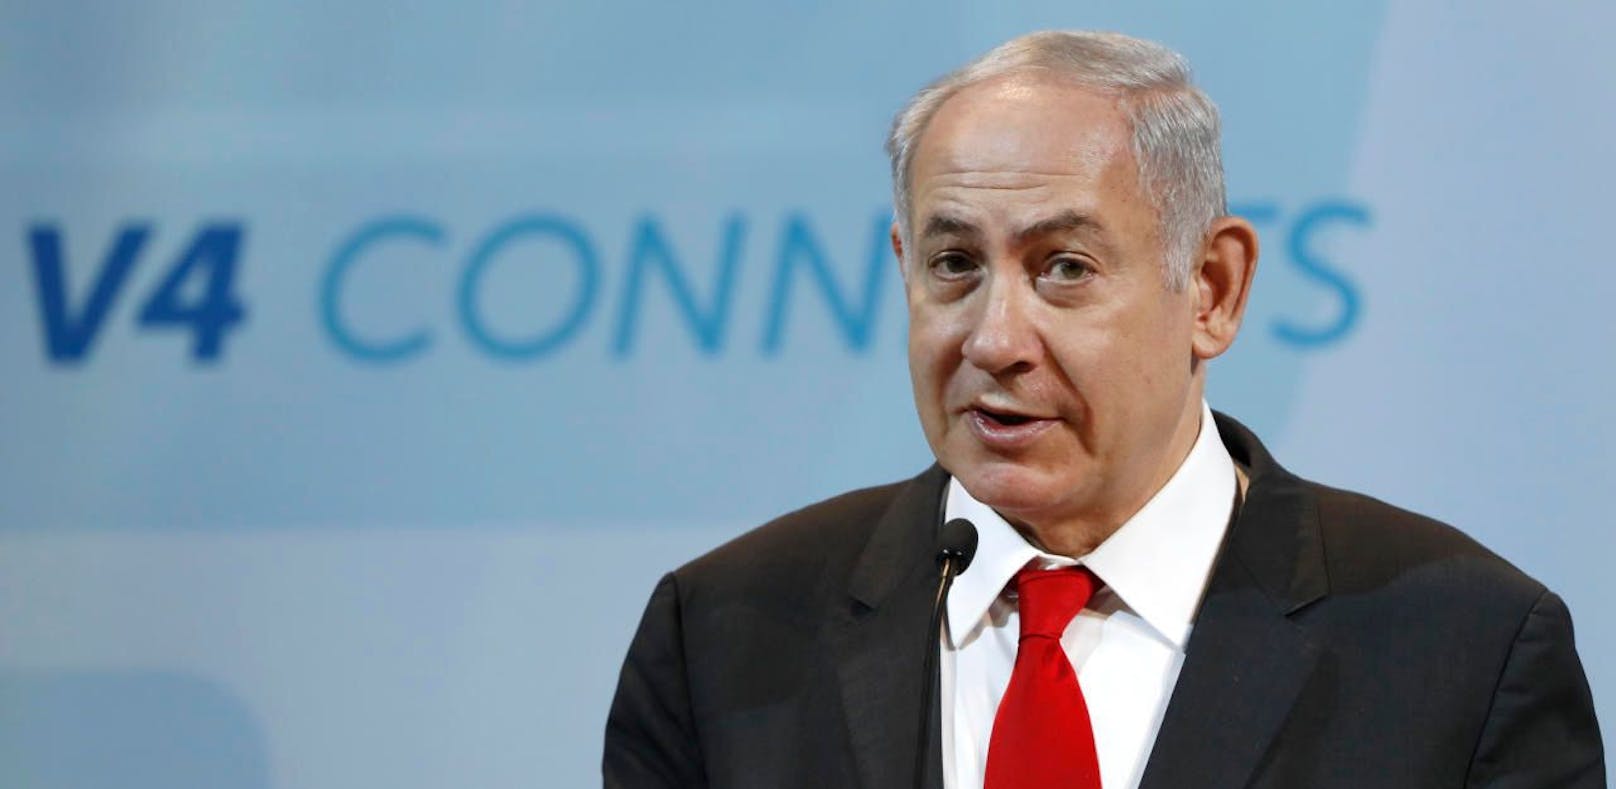 Mikrophon an: Netanyahu wettert gegen die EU